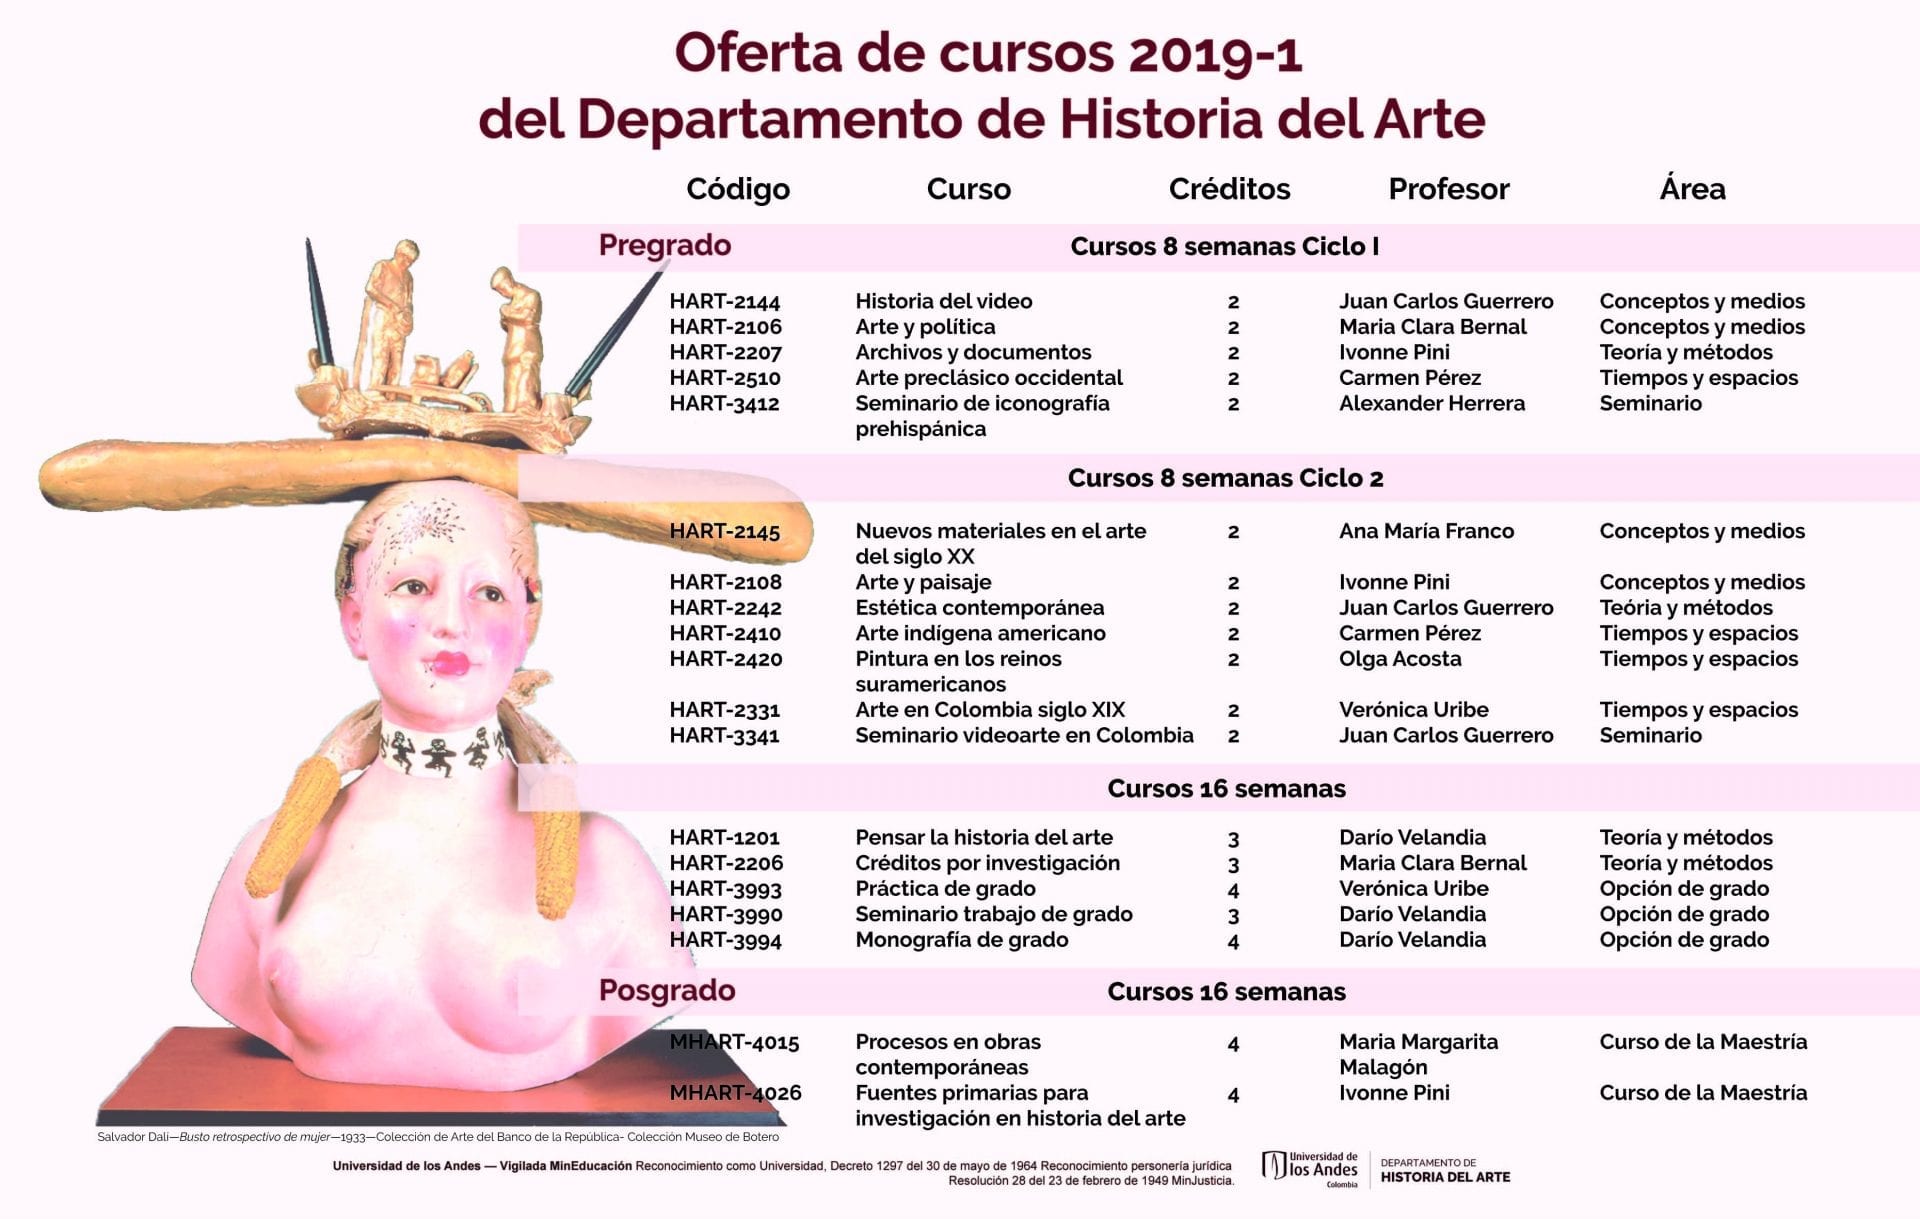 Conozca la oferta de cursos Historia del Arte 2019-1 en la Universidad de los Andes.